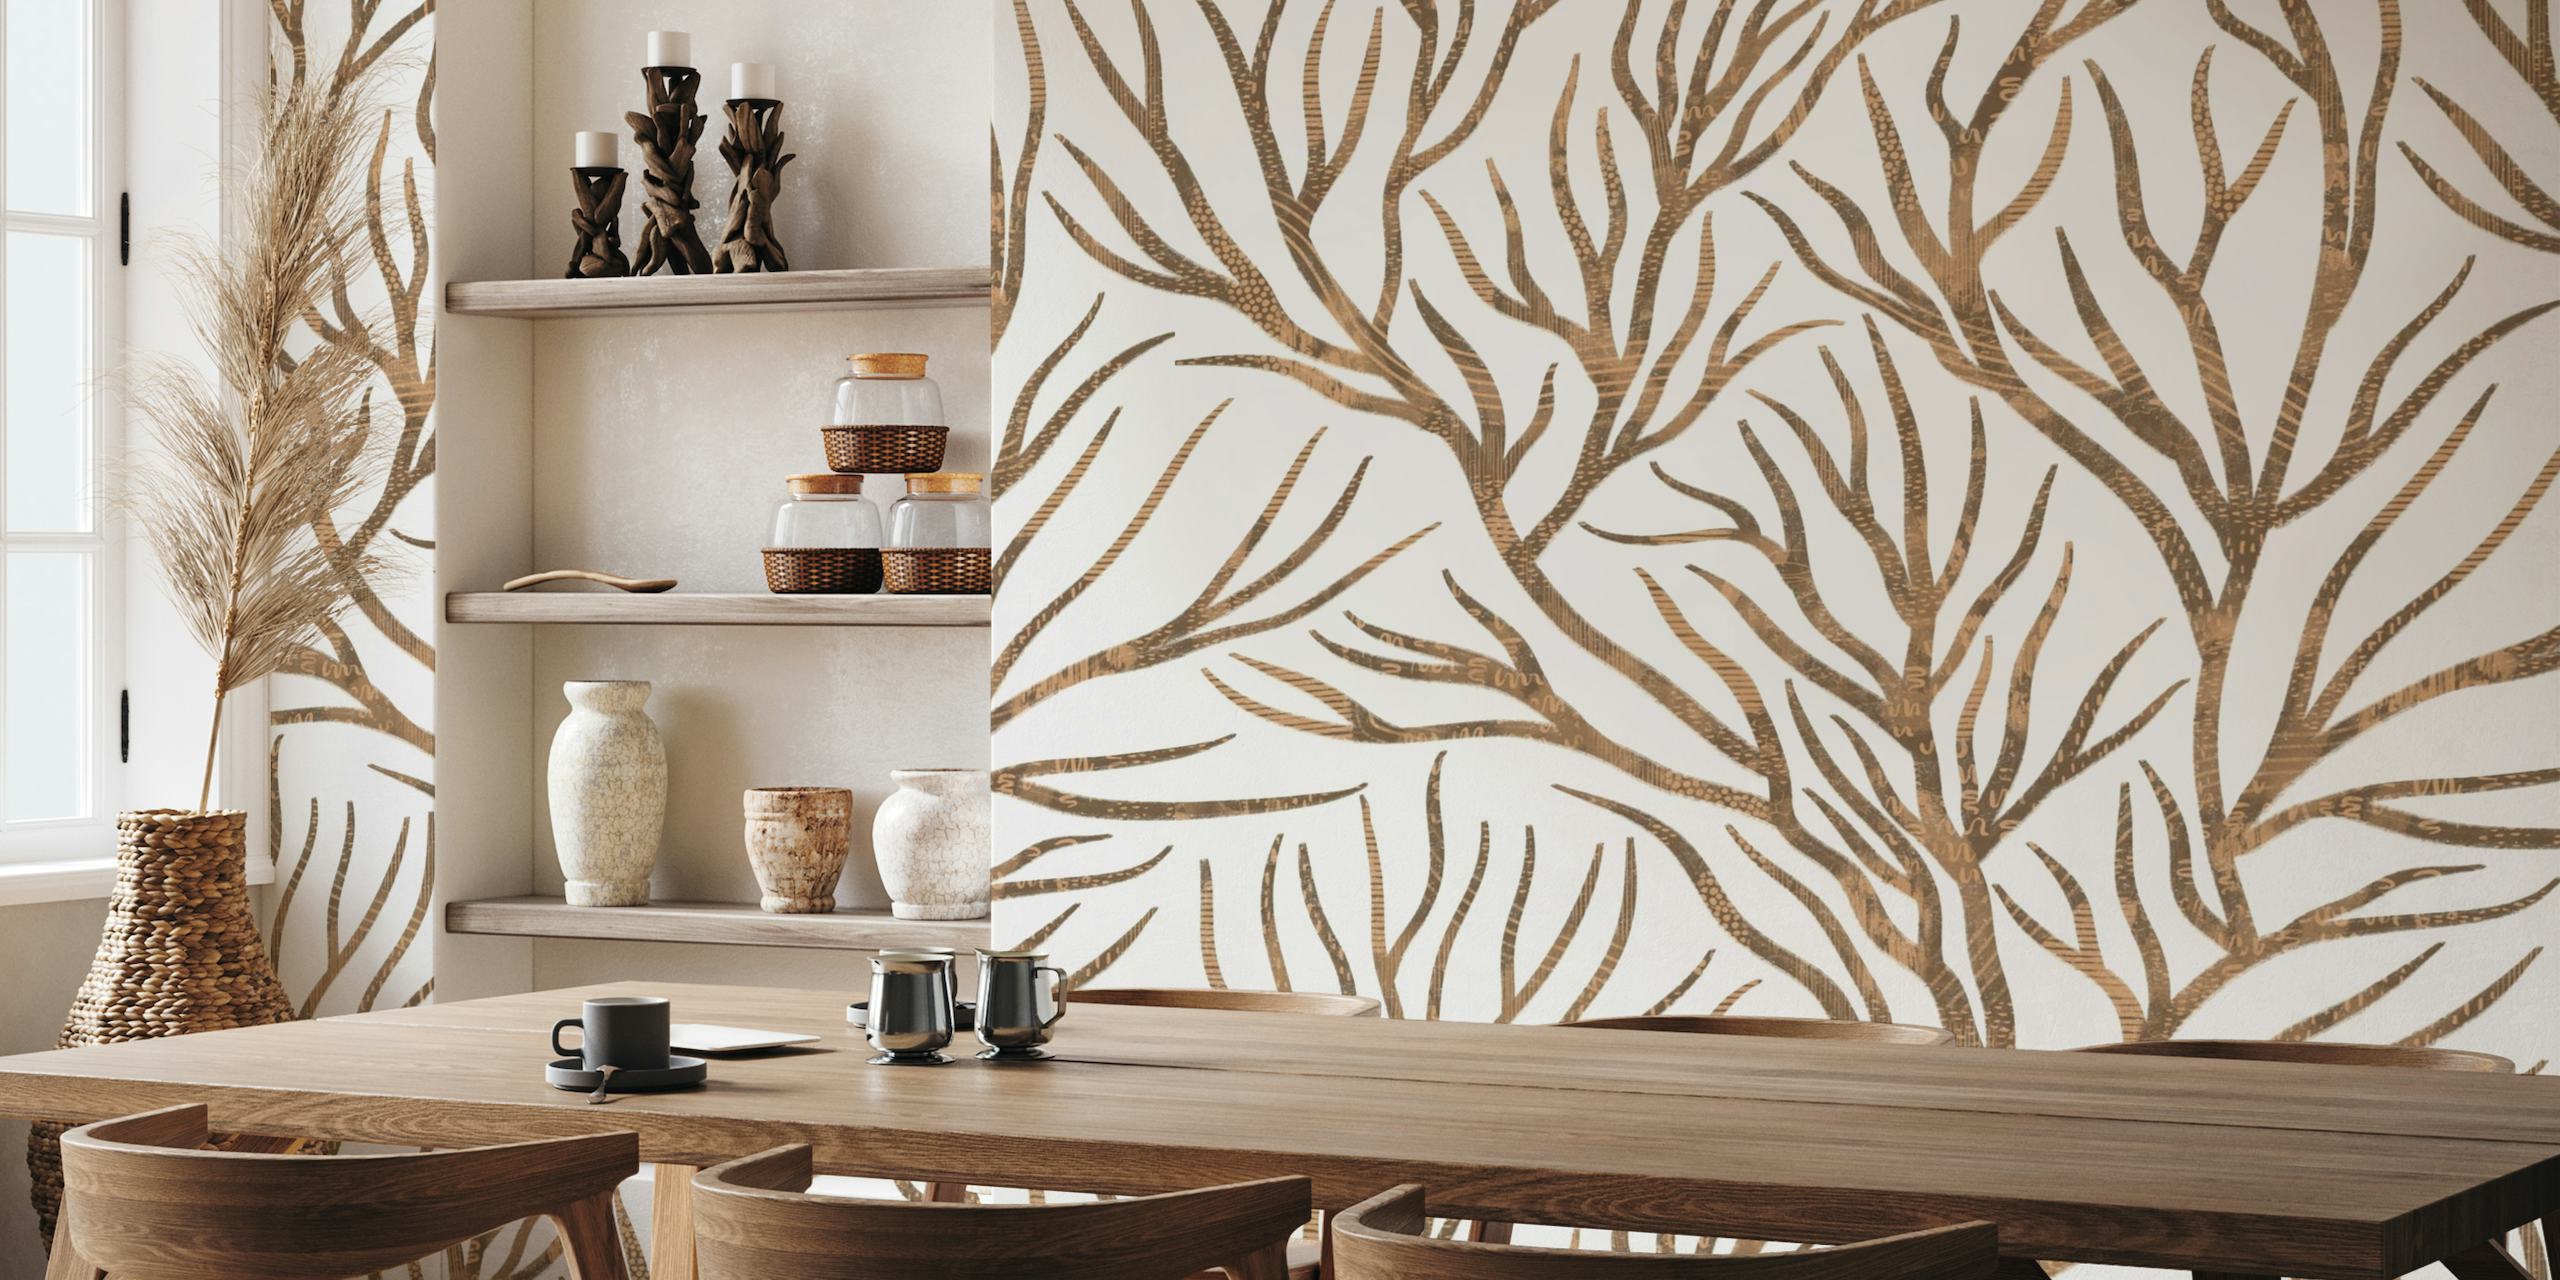 Wandbild „Tree Branches 1“ mit eleganten braunen Zweigen auf cremefarbenem Hintergrund